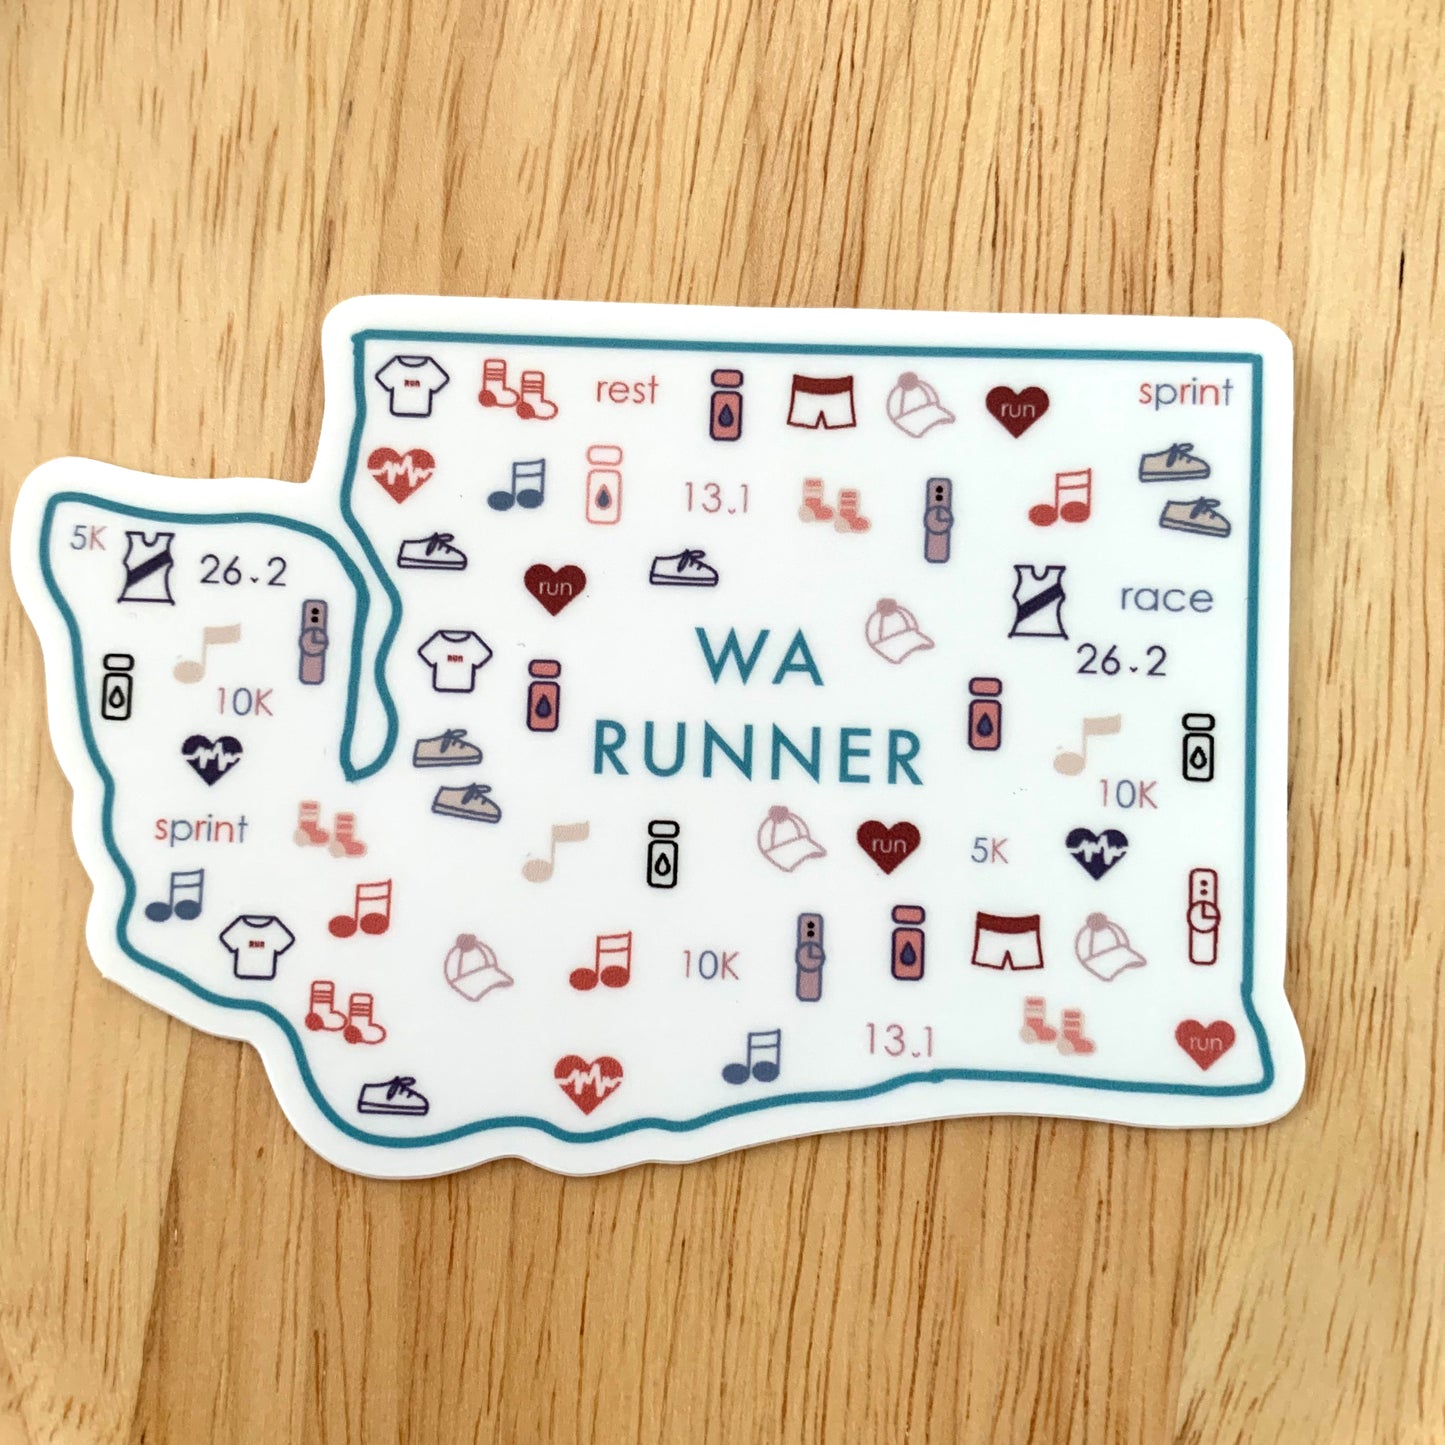 Washington runner, Run sticker, Seattle marathon, water bottle sticker, track and field, running sticker, runner sticker, Washington state